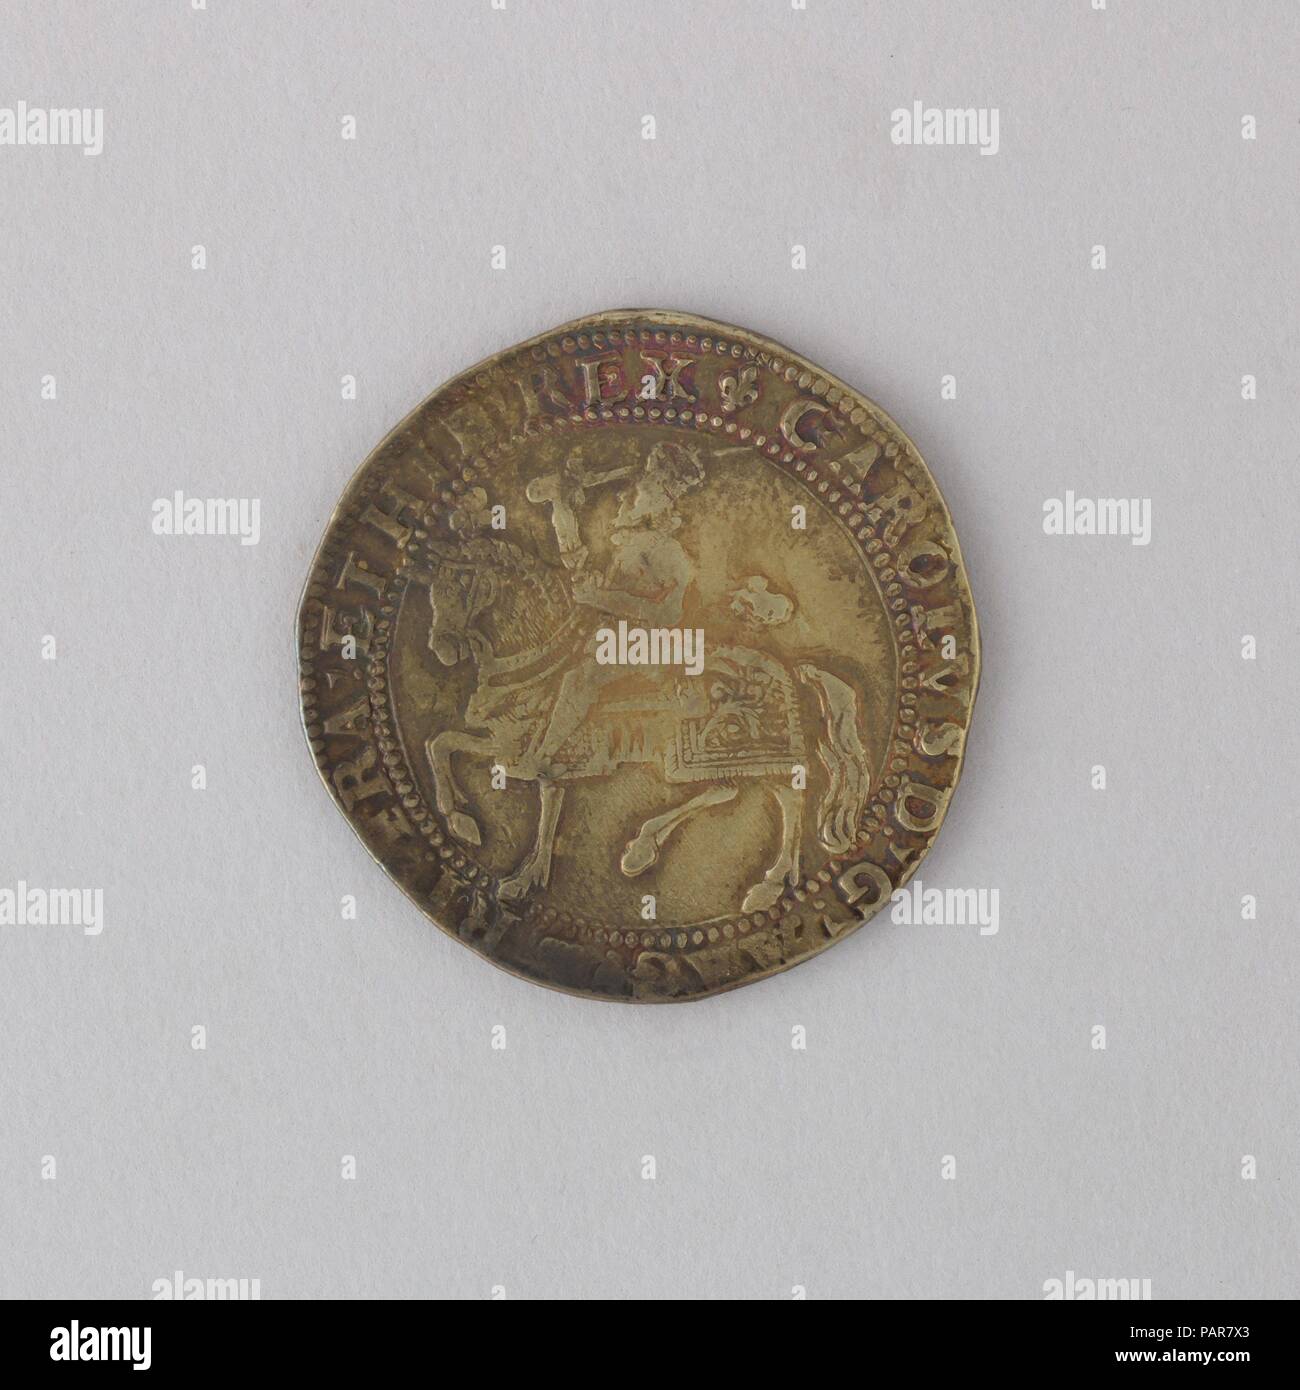 Coin (Couronne) montrant Charles I. Culture : britannique. Dimensions : diam. 1 11/16 in. (4,2 cm), épaisseur 1/8 in. (0,3 cm) ; WT. 1.1 oz. (31,2 g). Date : 1625. Musée : Metropolitan Museum of Art, New York, USA. Banque D'Images